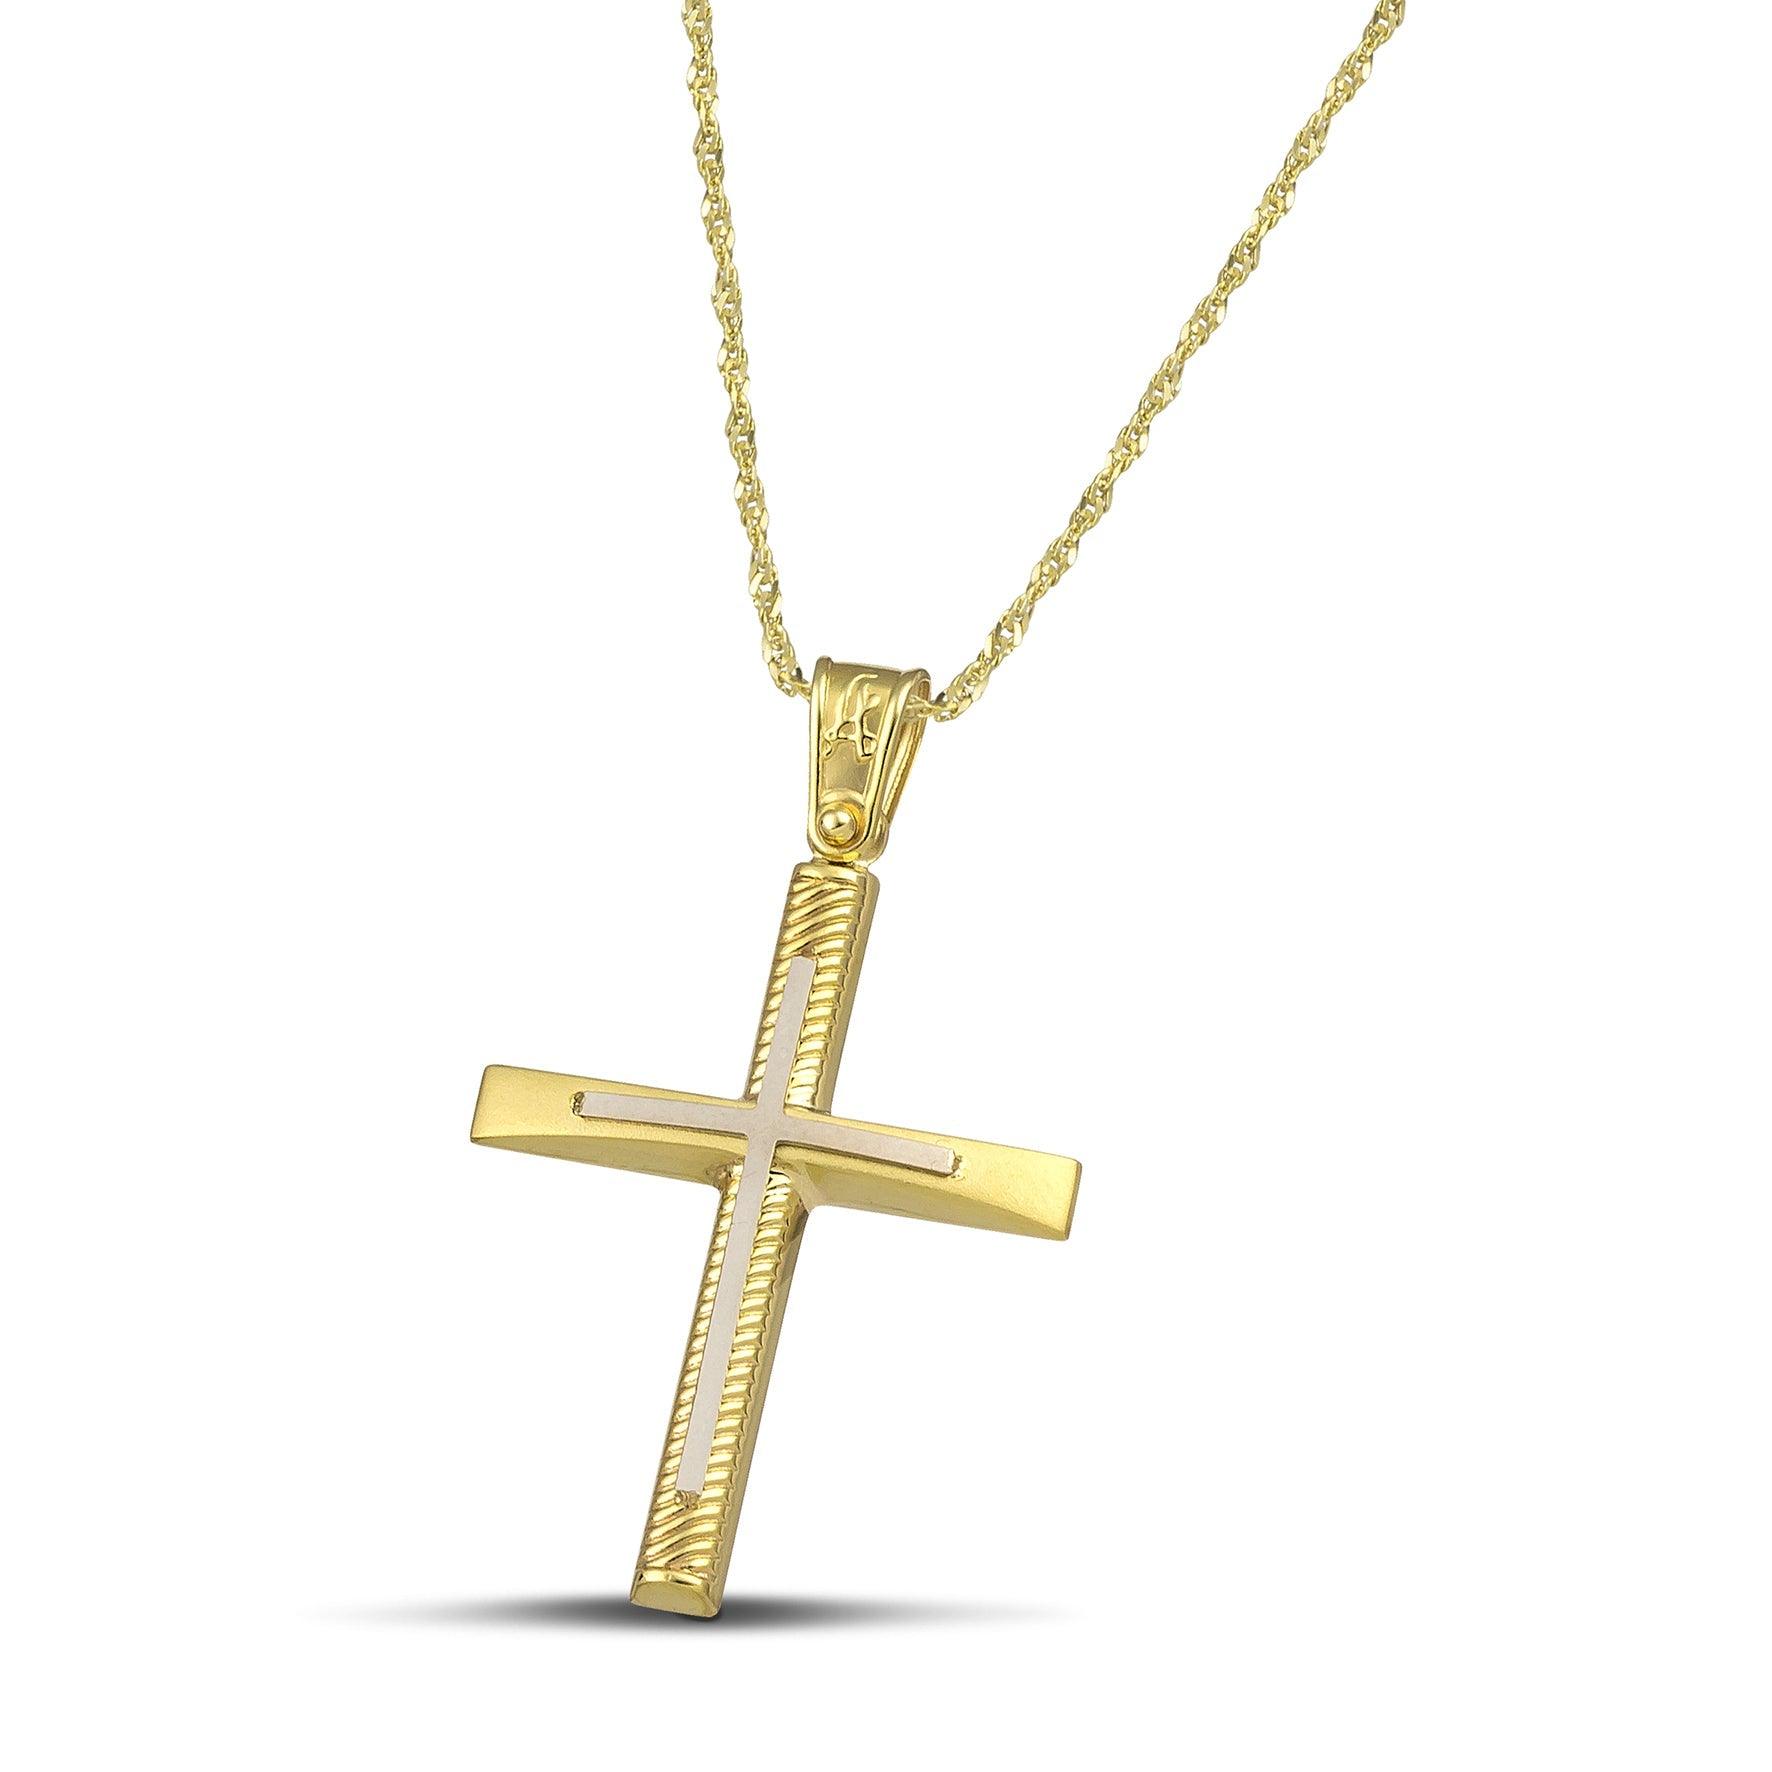 Σταυρός βάπτισης χρυσός Κ14 για γυναίκα. Διαθέτει σκαλιστά σχέδια και λευκόχρυσο σταυρό, με λεπτή, στριφτή αλυσίδα.